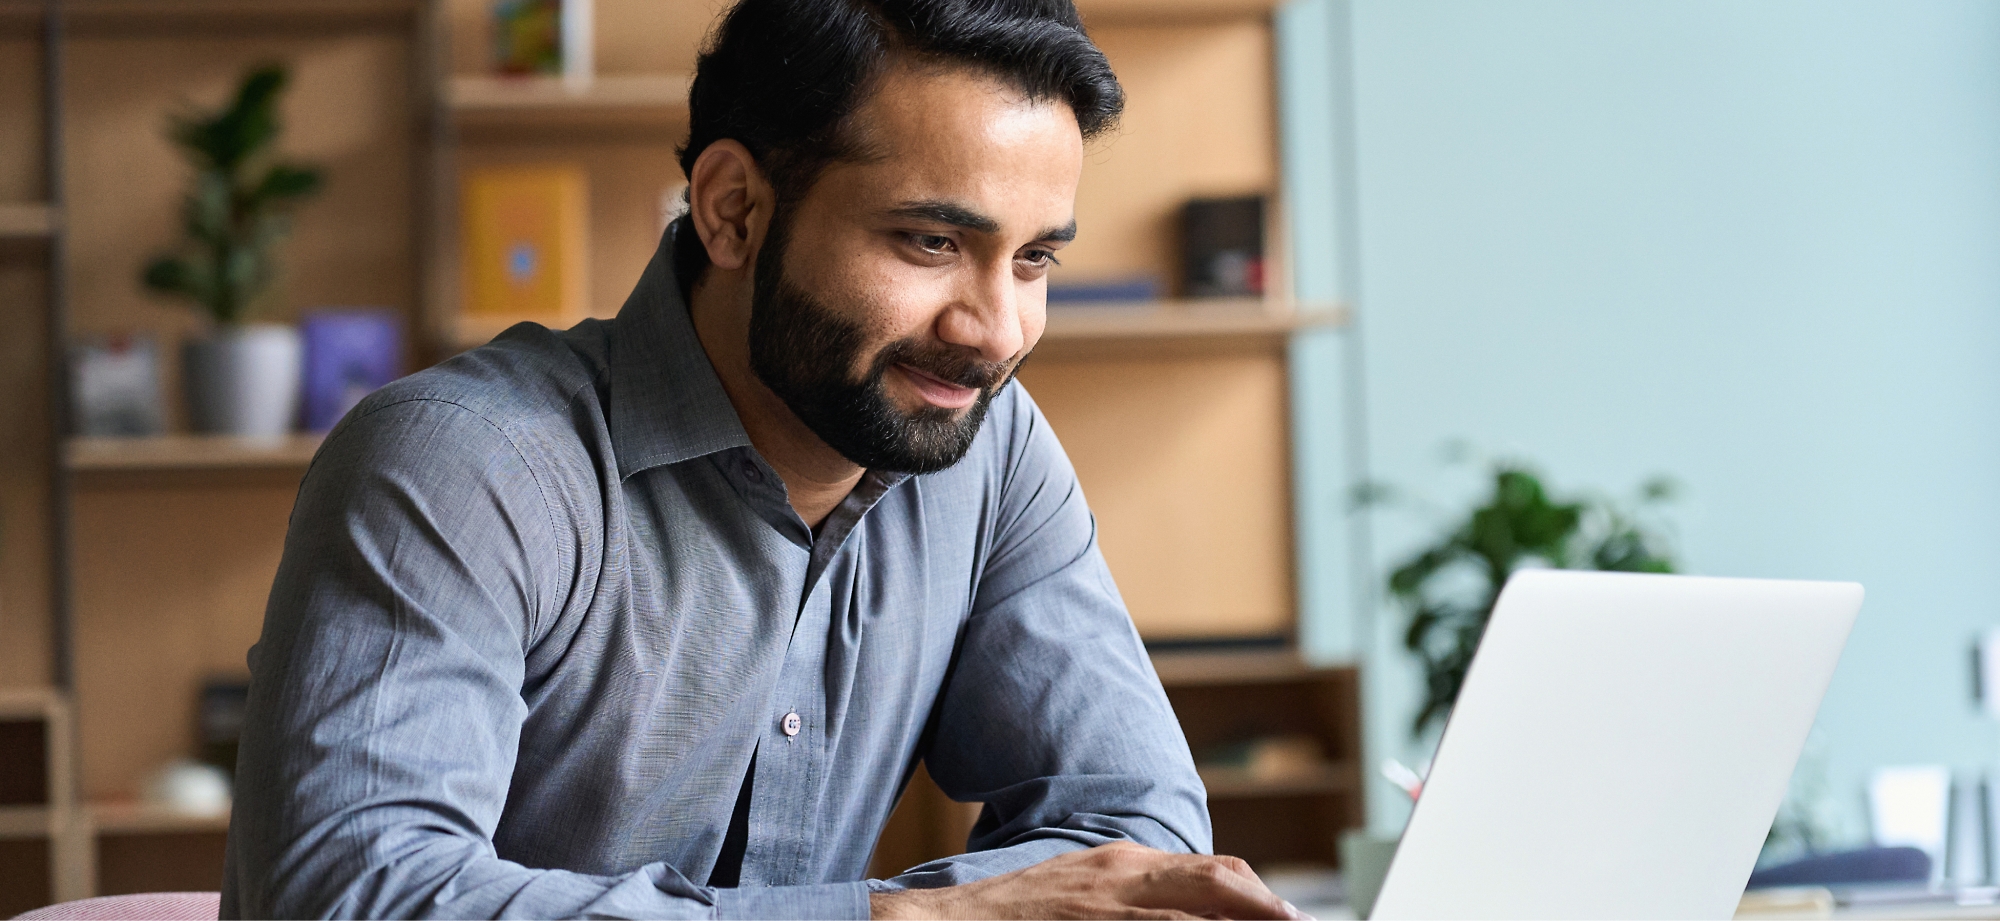 Ein Mann mit Bart lächelt leicht, während er an einem Laptop in einem Büro mit Regalen im Hintergrund arbeitet.